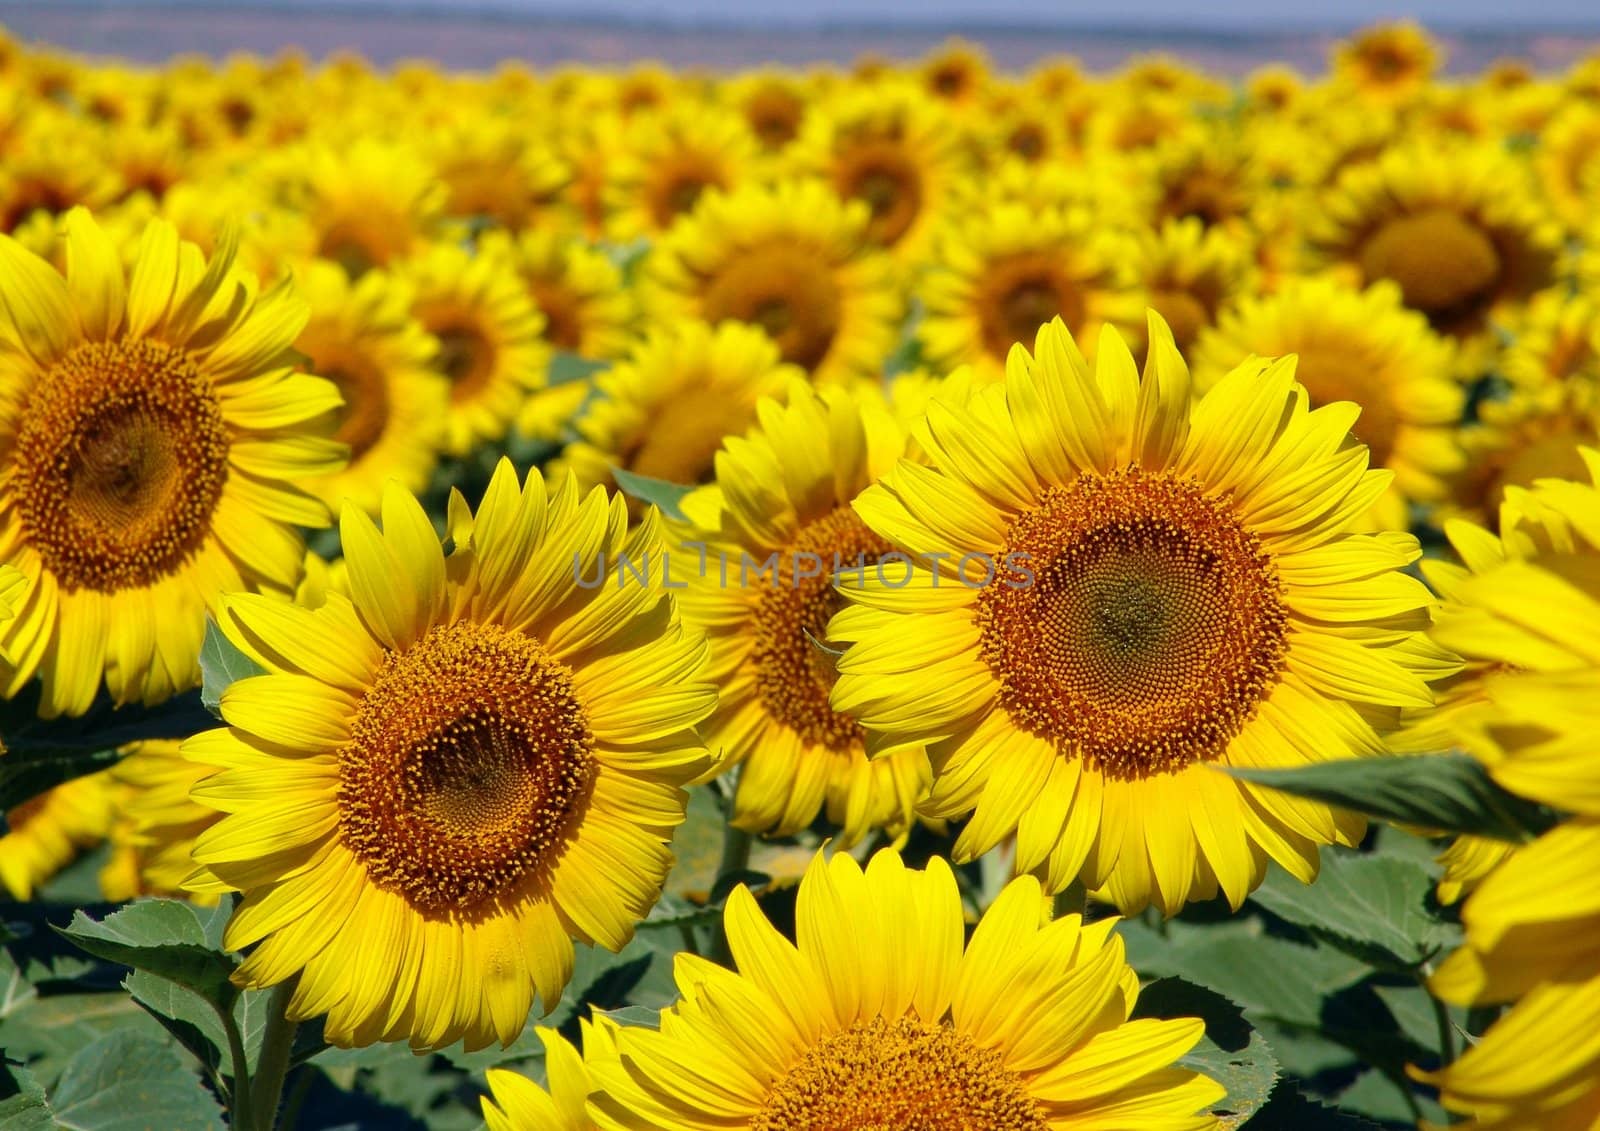 Sunflowers by AlexeyE30